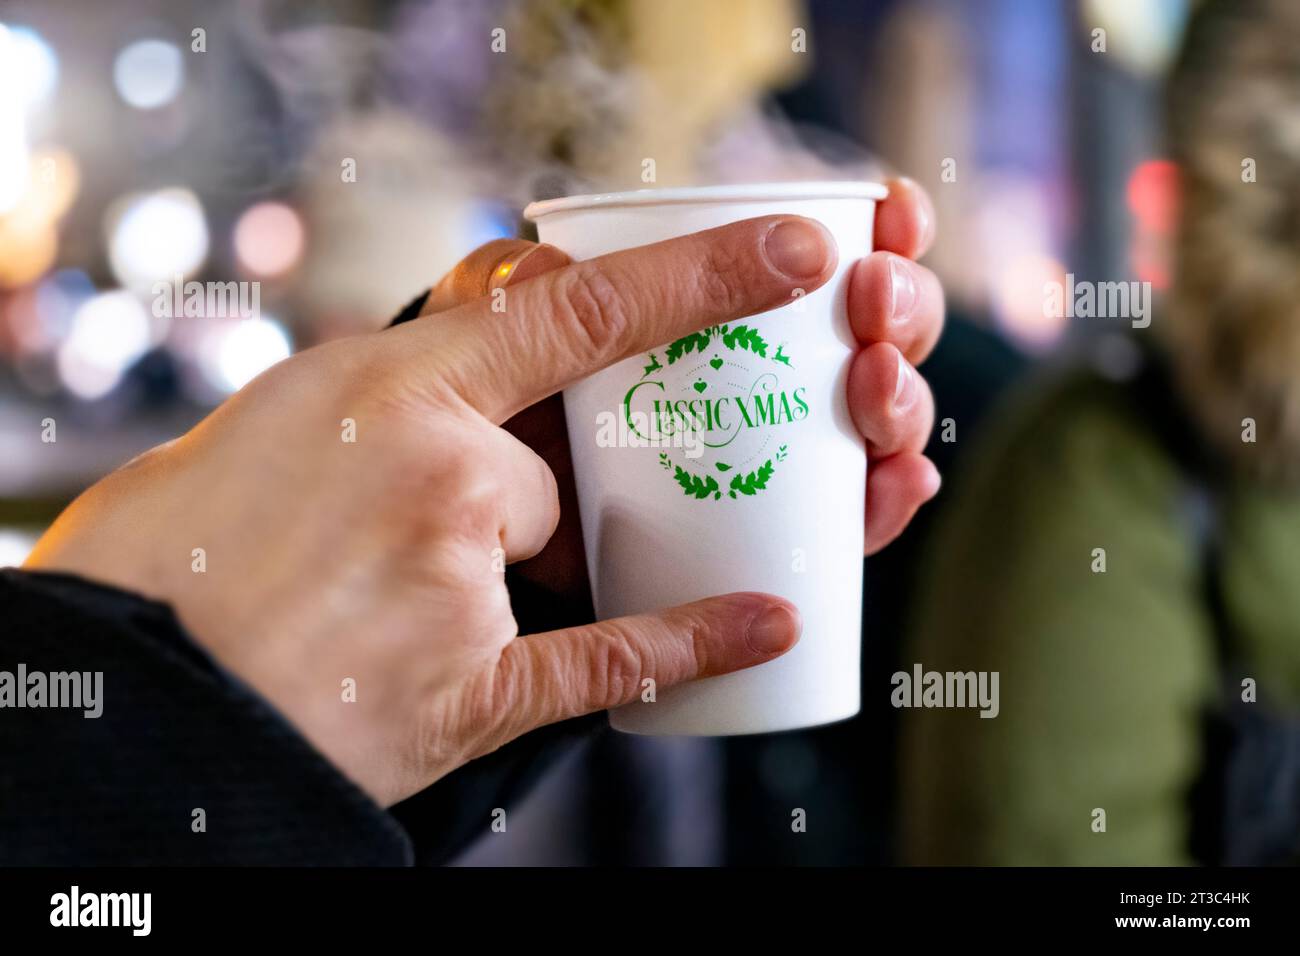 Une main tenant une boisson chaude dans une tasse de Noël en plastique sur un marché de Noël Banque D'Images